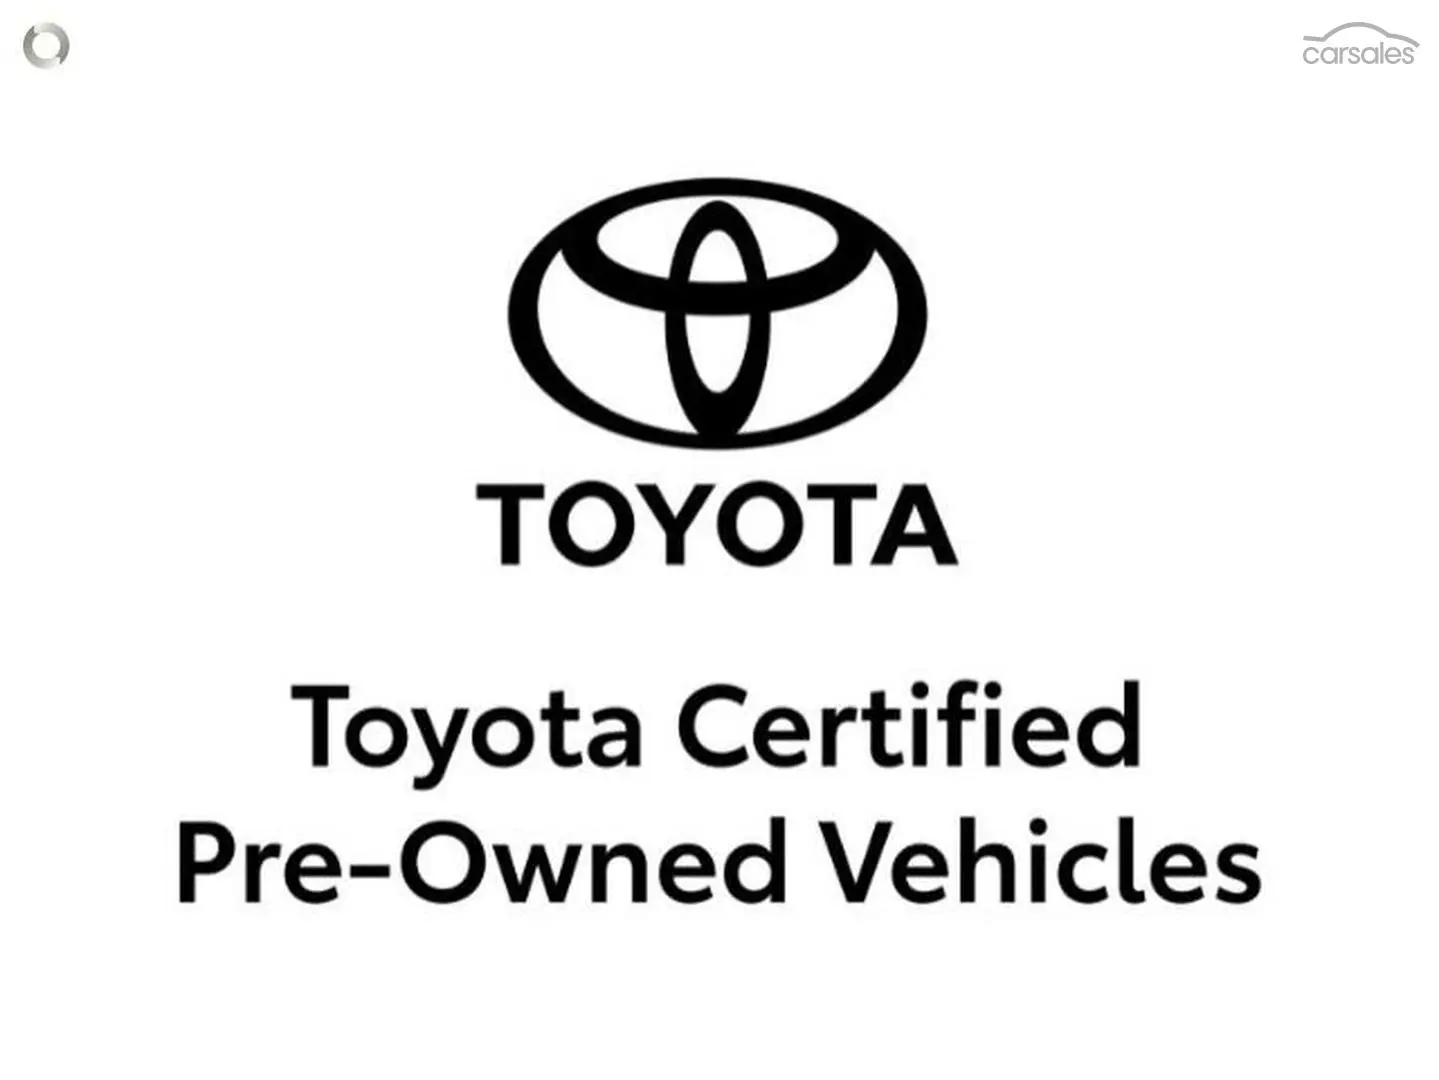 2020 Toyota Corolla Image 2